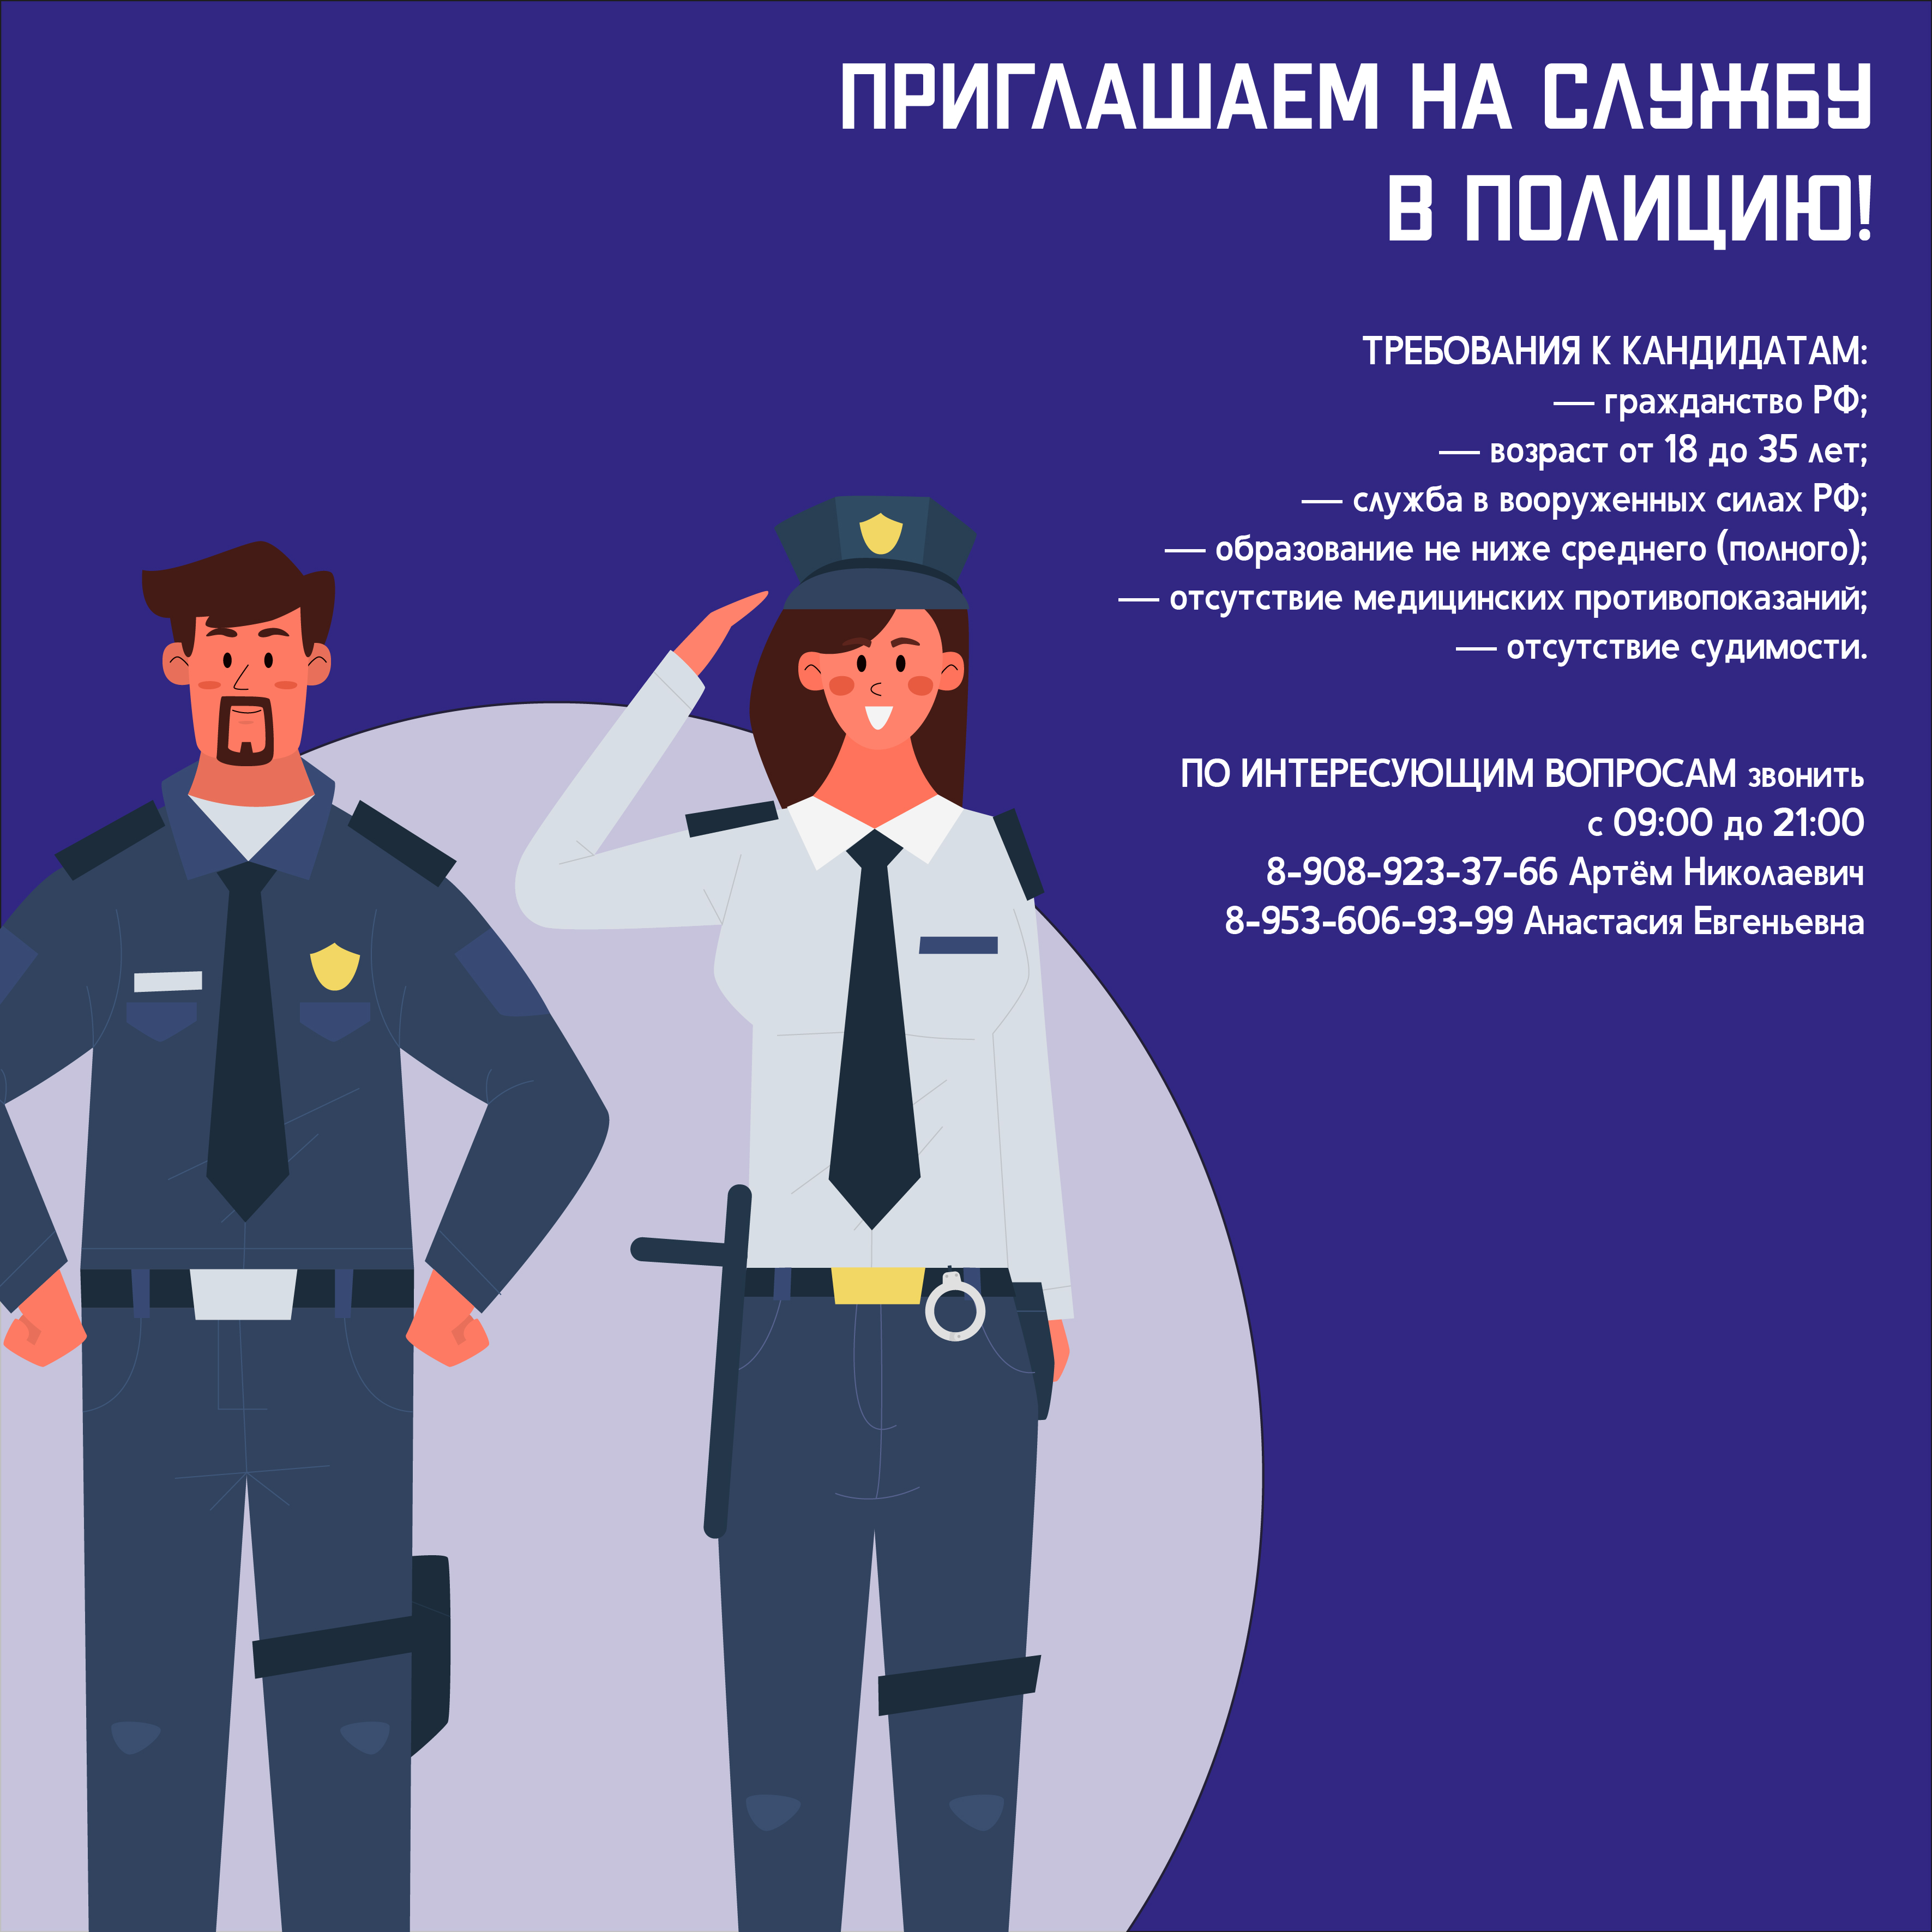 Должность в полиции для мужчин